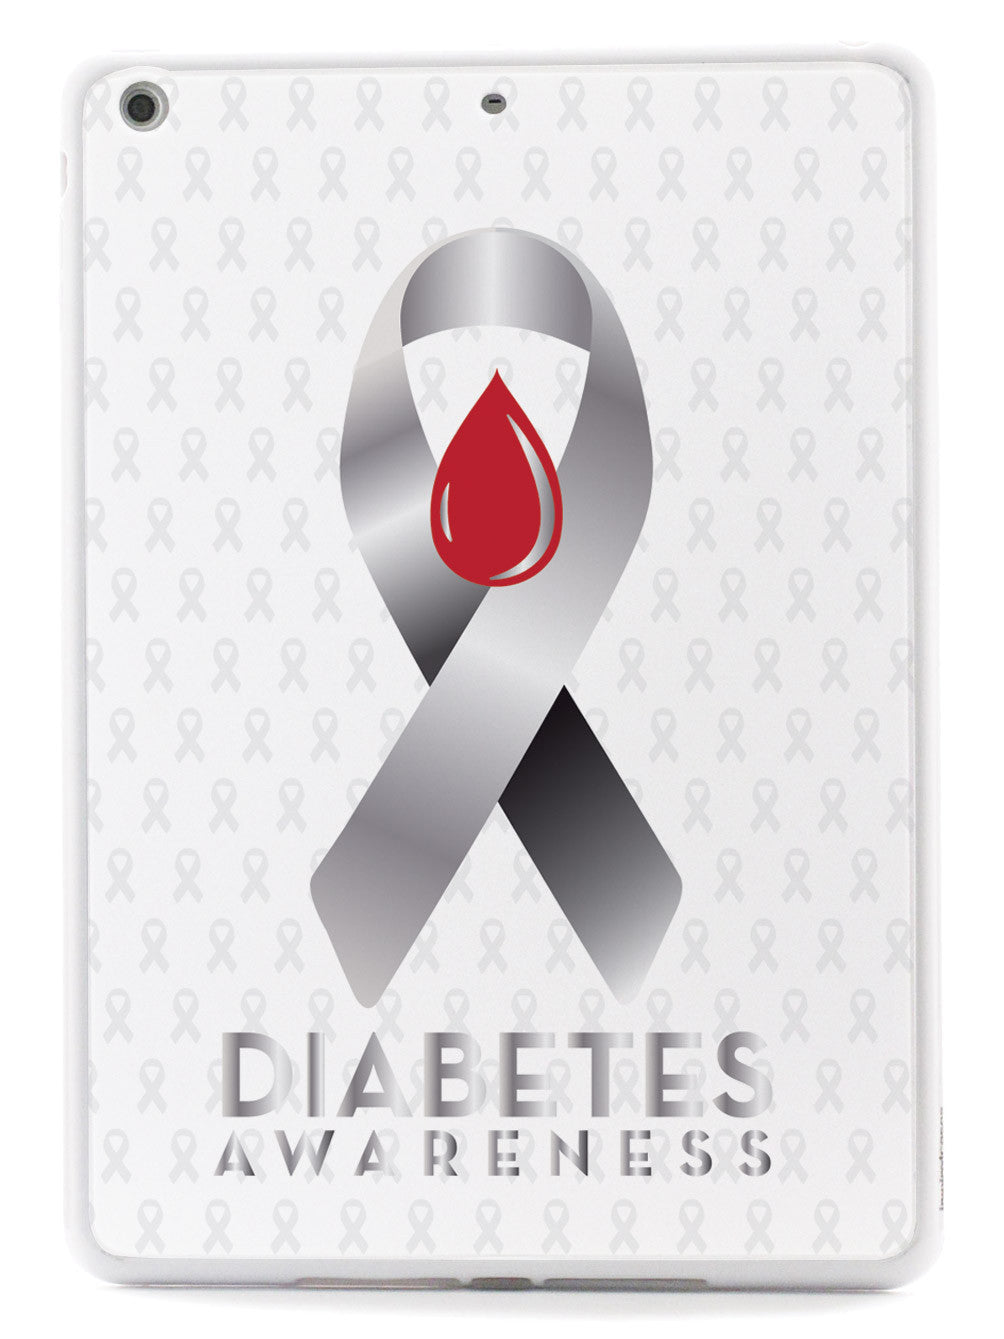 Diabetes Awareness - White Case